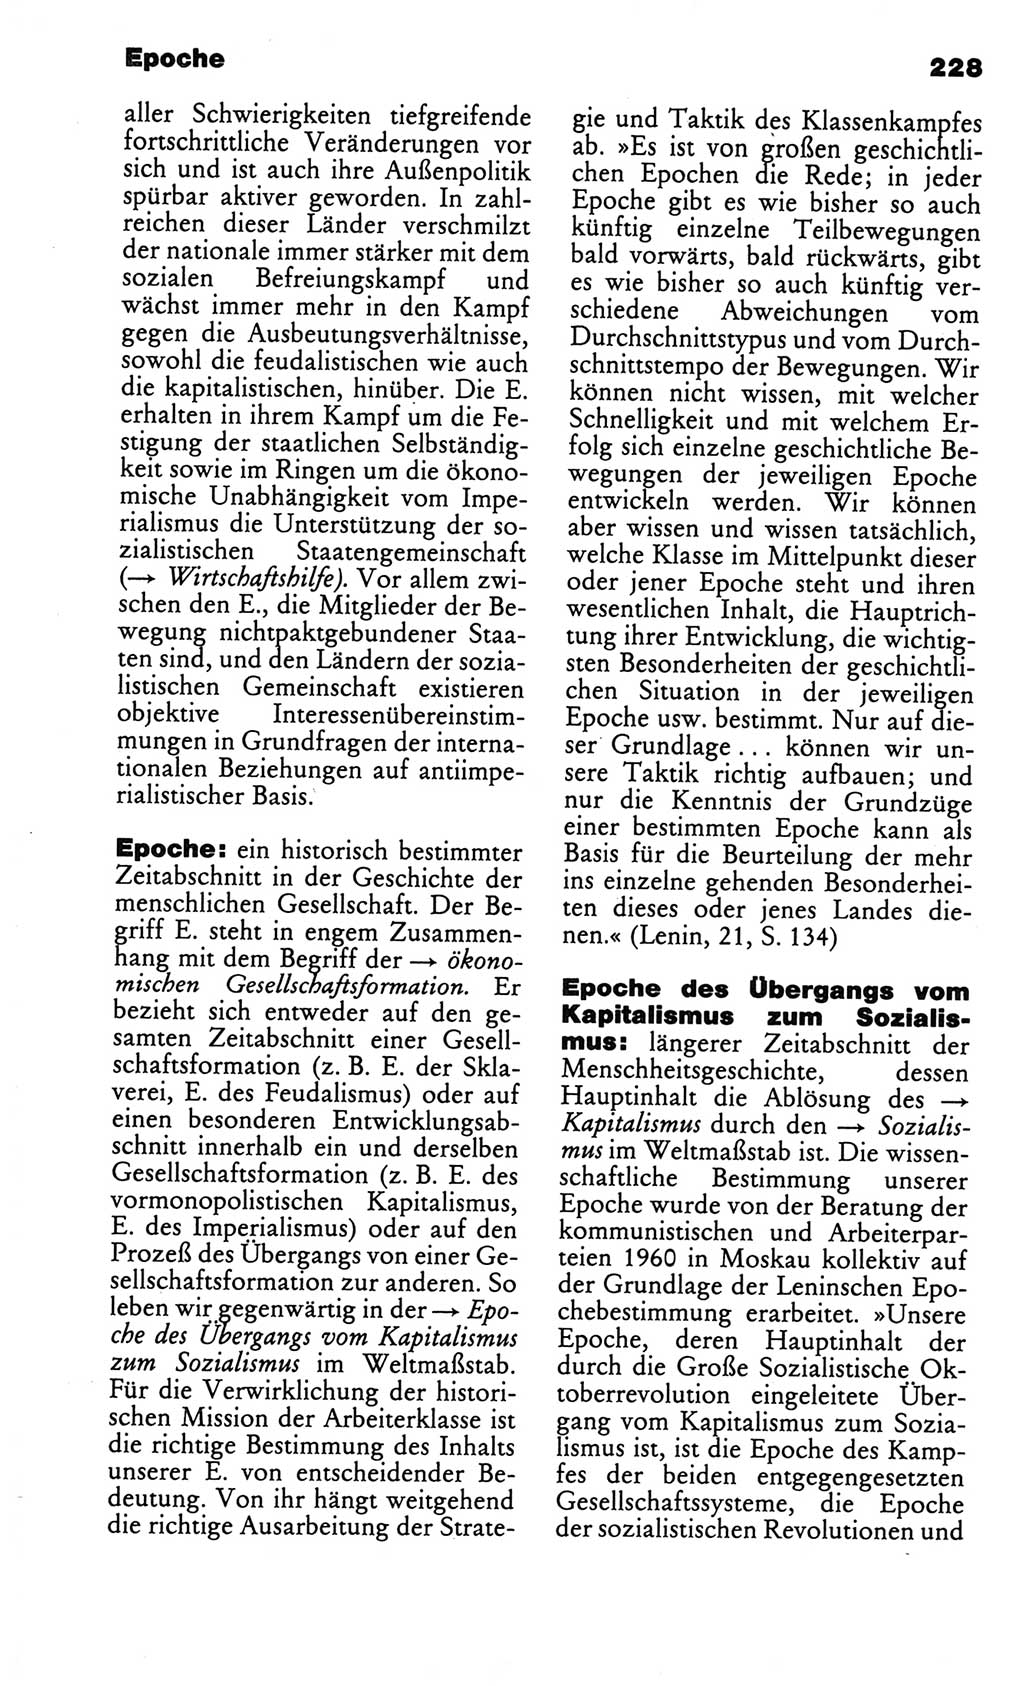 Kleines politisches Wörterbuch [Deutsche Demokratische Republik (DDR)] 1986, Seite 228 (Kl. pol. Wb. DDR 1986, S. 228)